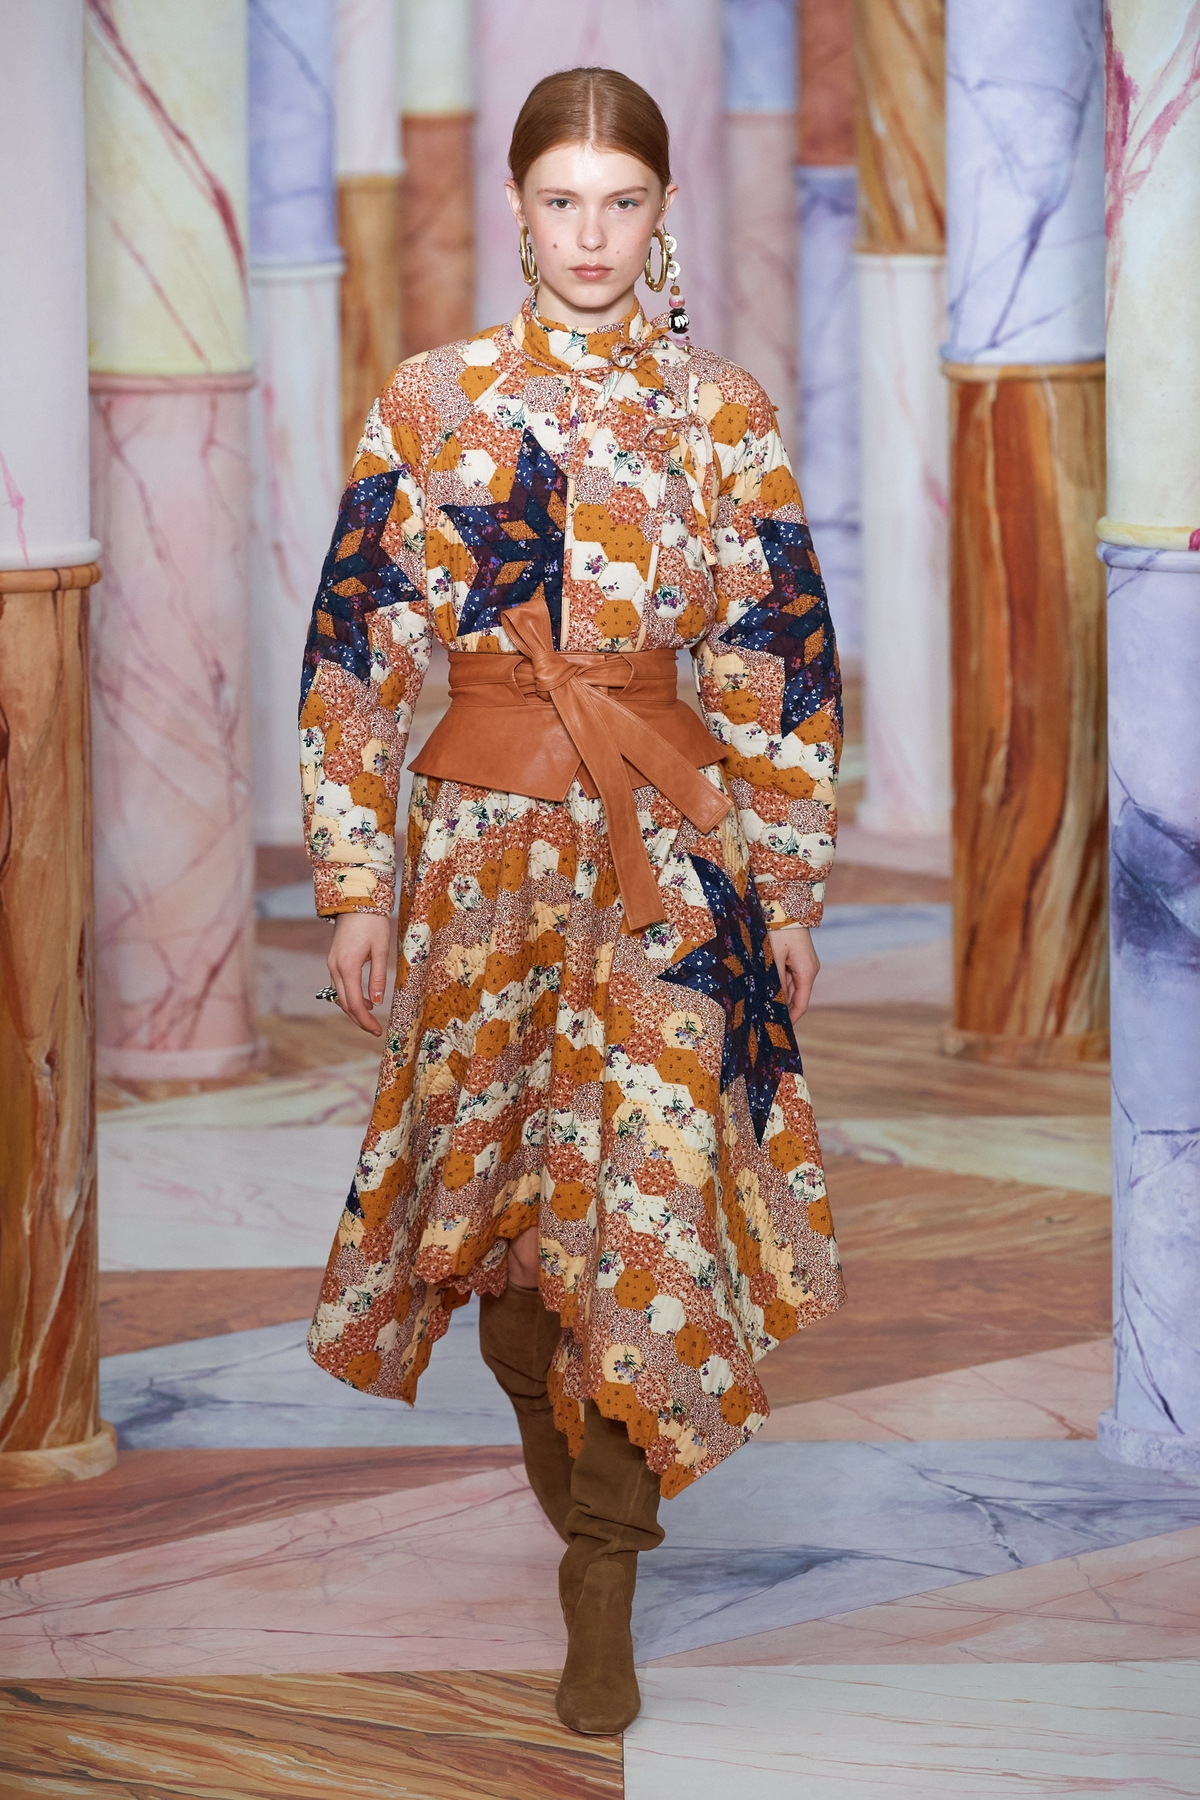 Váy chần bông chắp vá họa tiết của Ulla Johnson mang tone màu nâu đỏ, được nhấn nhá bằng thắt lưng obi cá tính